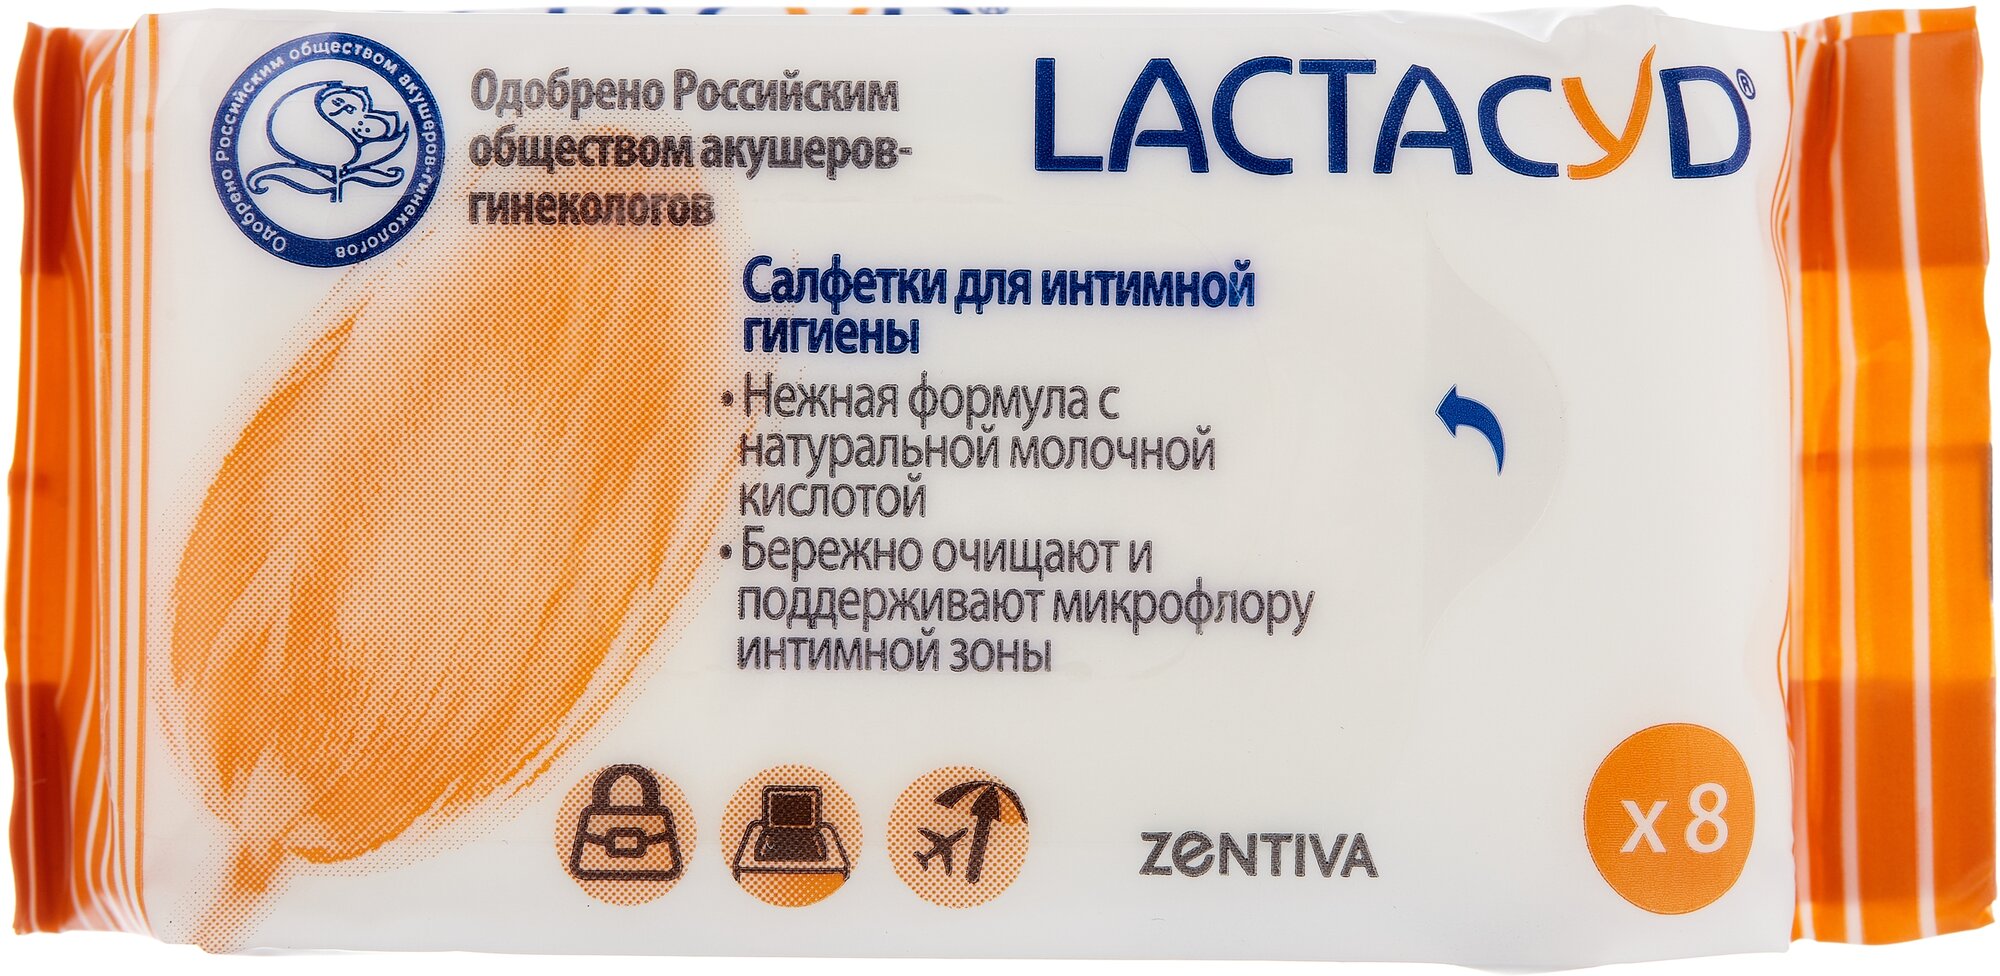 Лактацид салфетки для интимной гигиены упаковка 8 шт